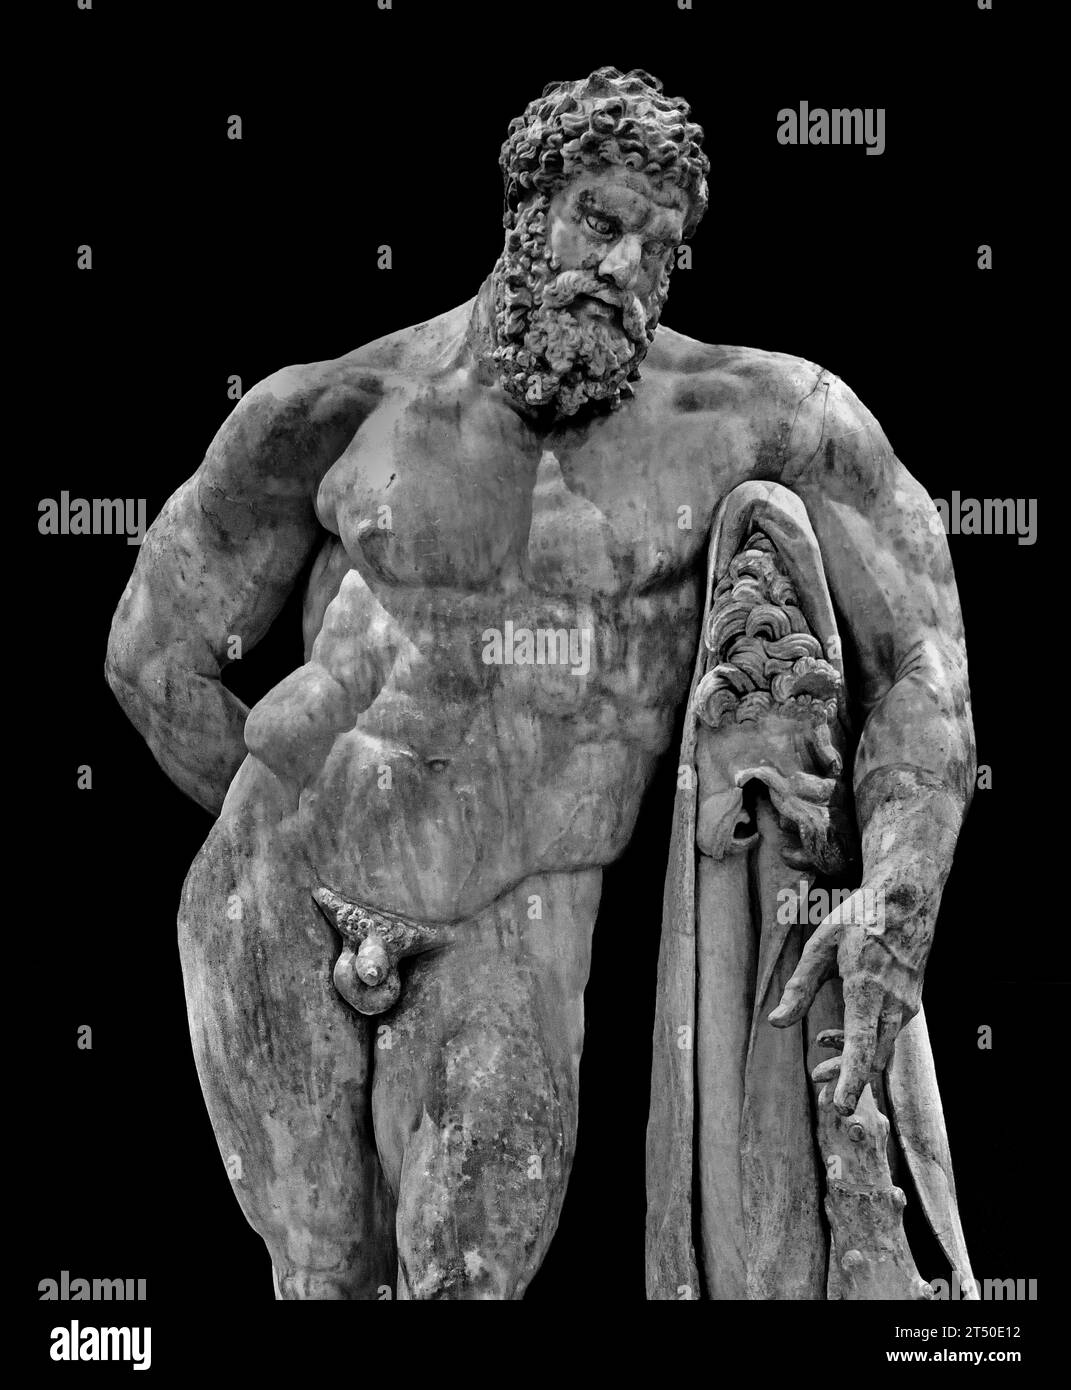 Ercole a riposo - Ercole Farnesi 216 d.C. (IV secolo a.C. per originale) museo Archeologico Nazionale di Napoli Italia. Foto Stock